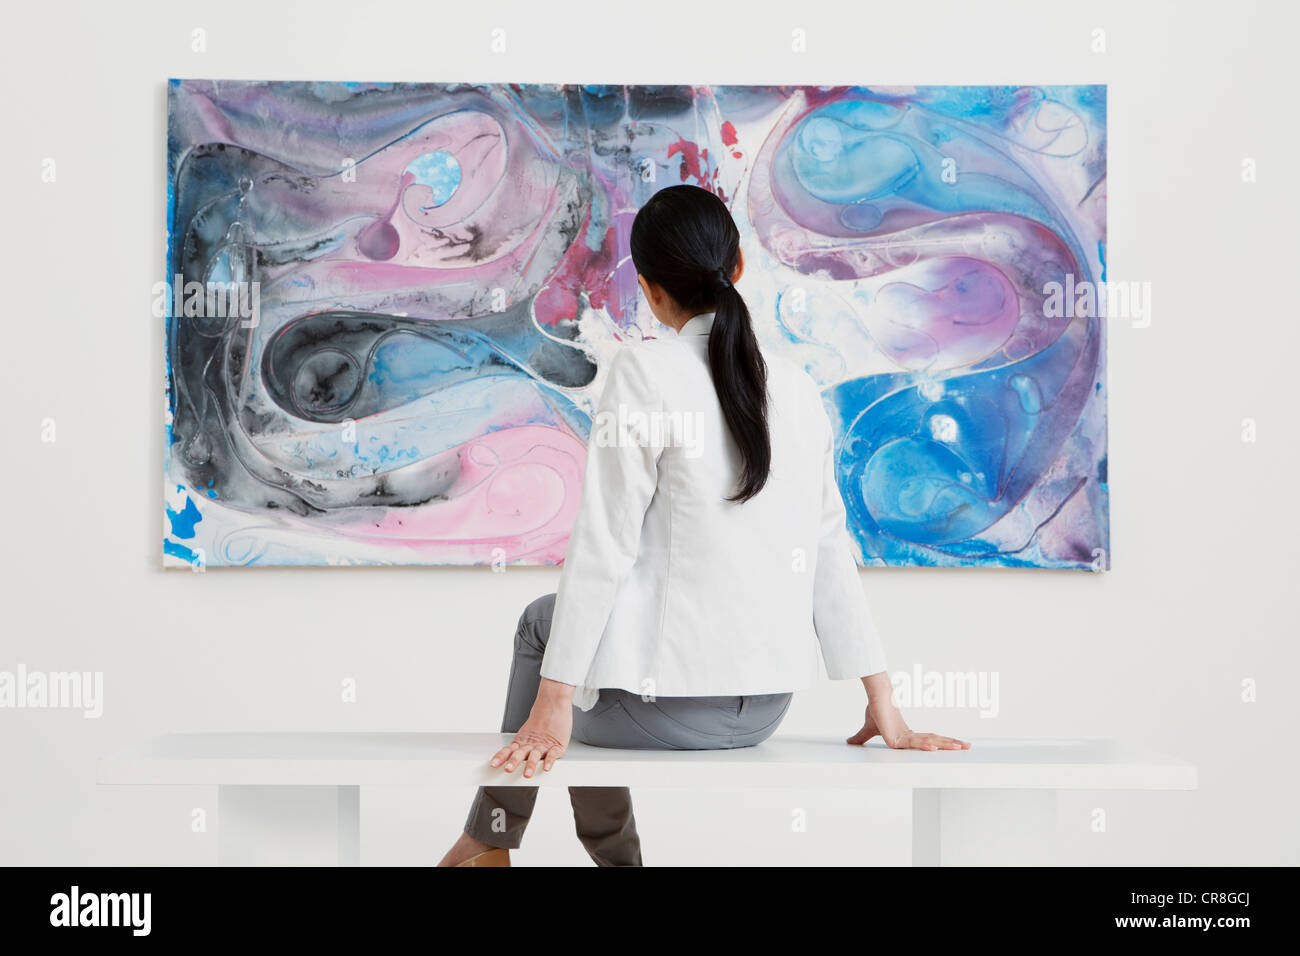 Junge Frau, die Öl-Malerei in der Galerie zu betrachten Stockfoto